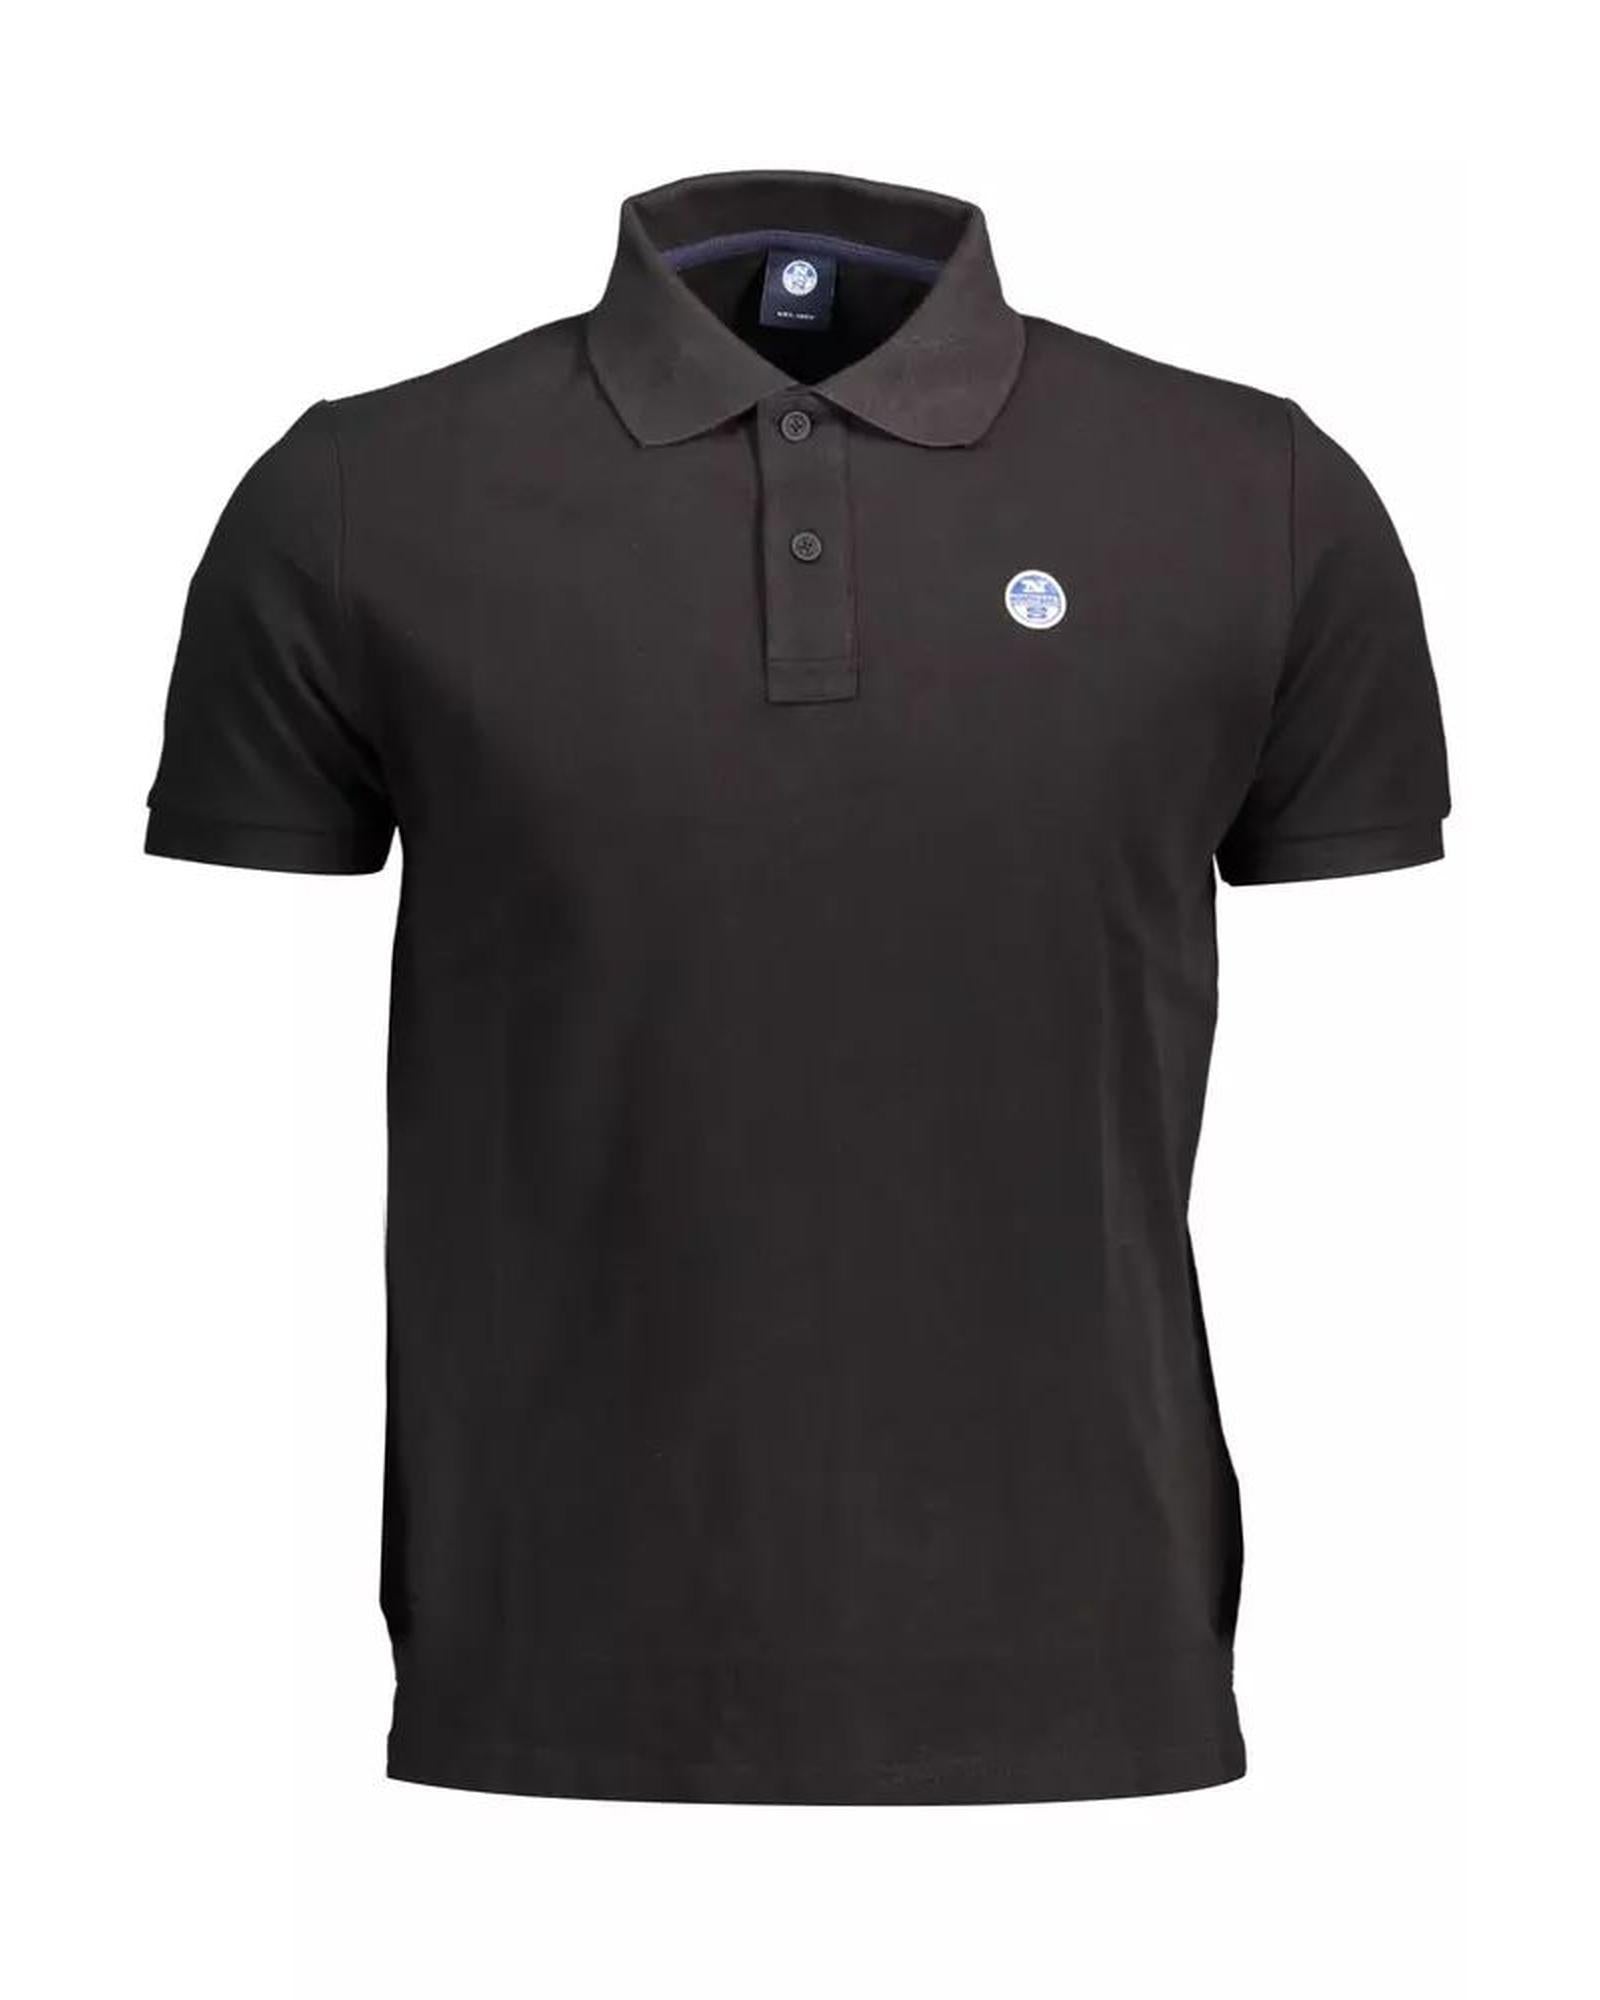 Men's Black Cotton Polo Shirt - L